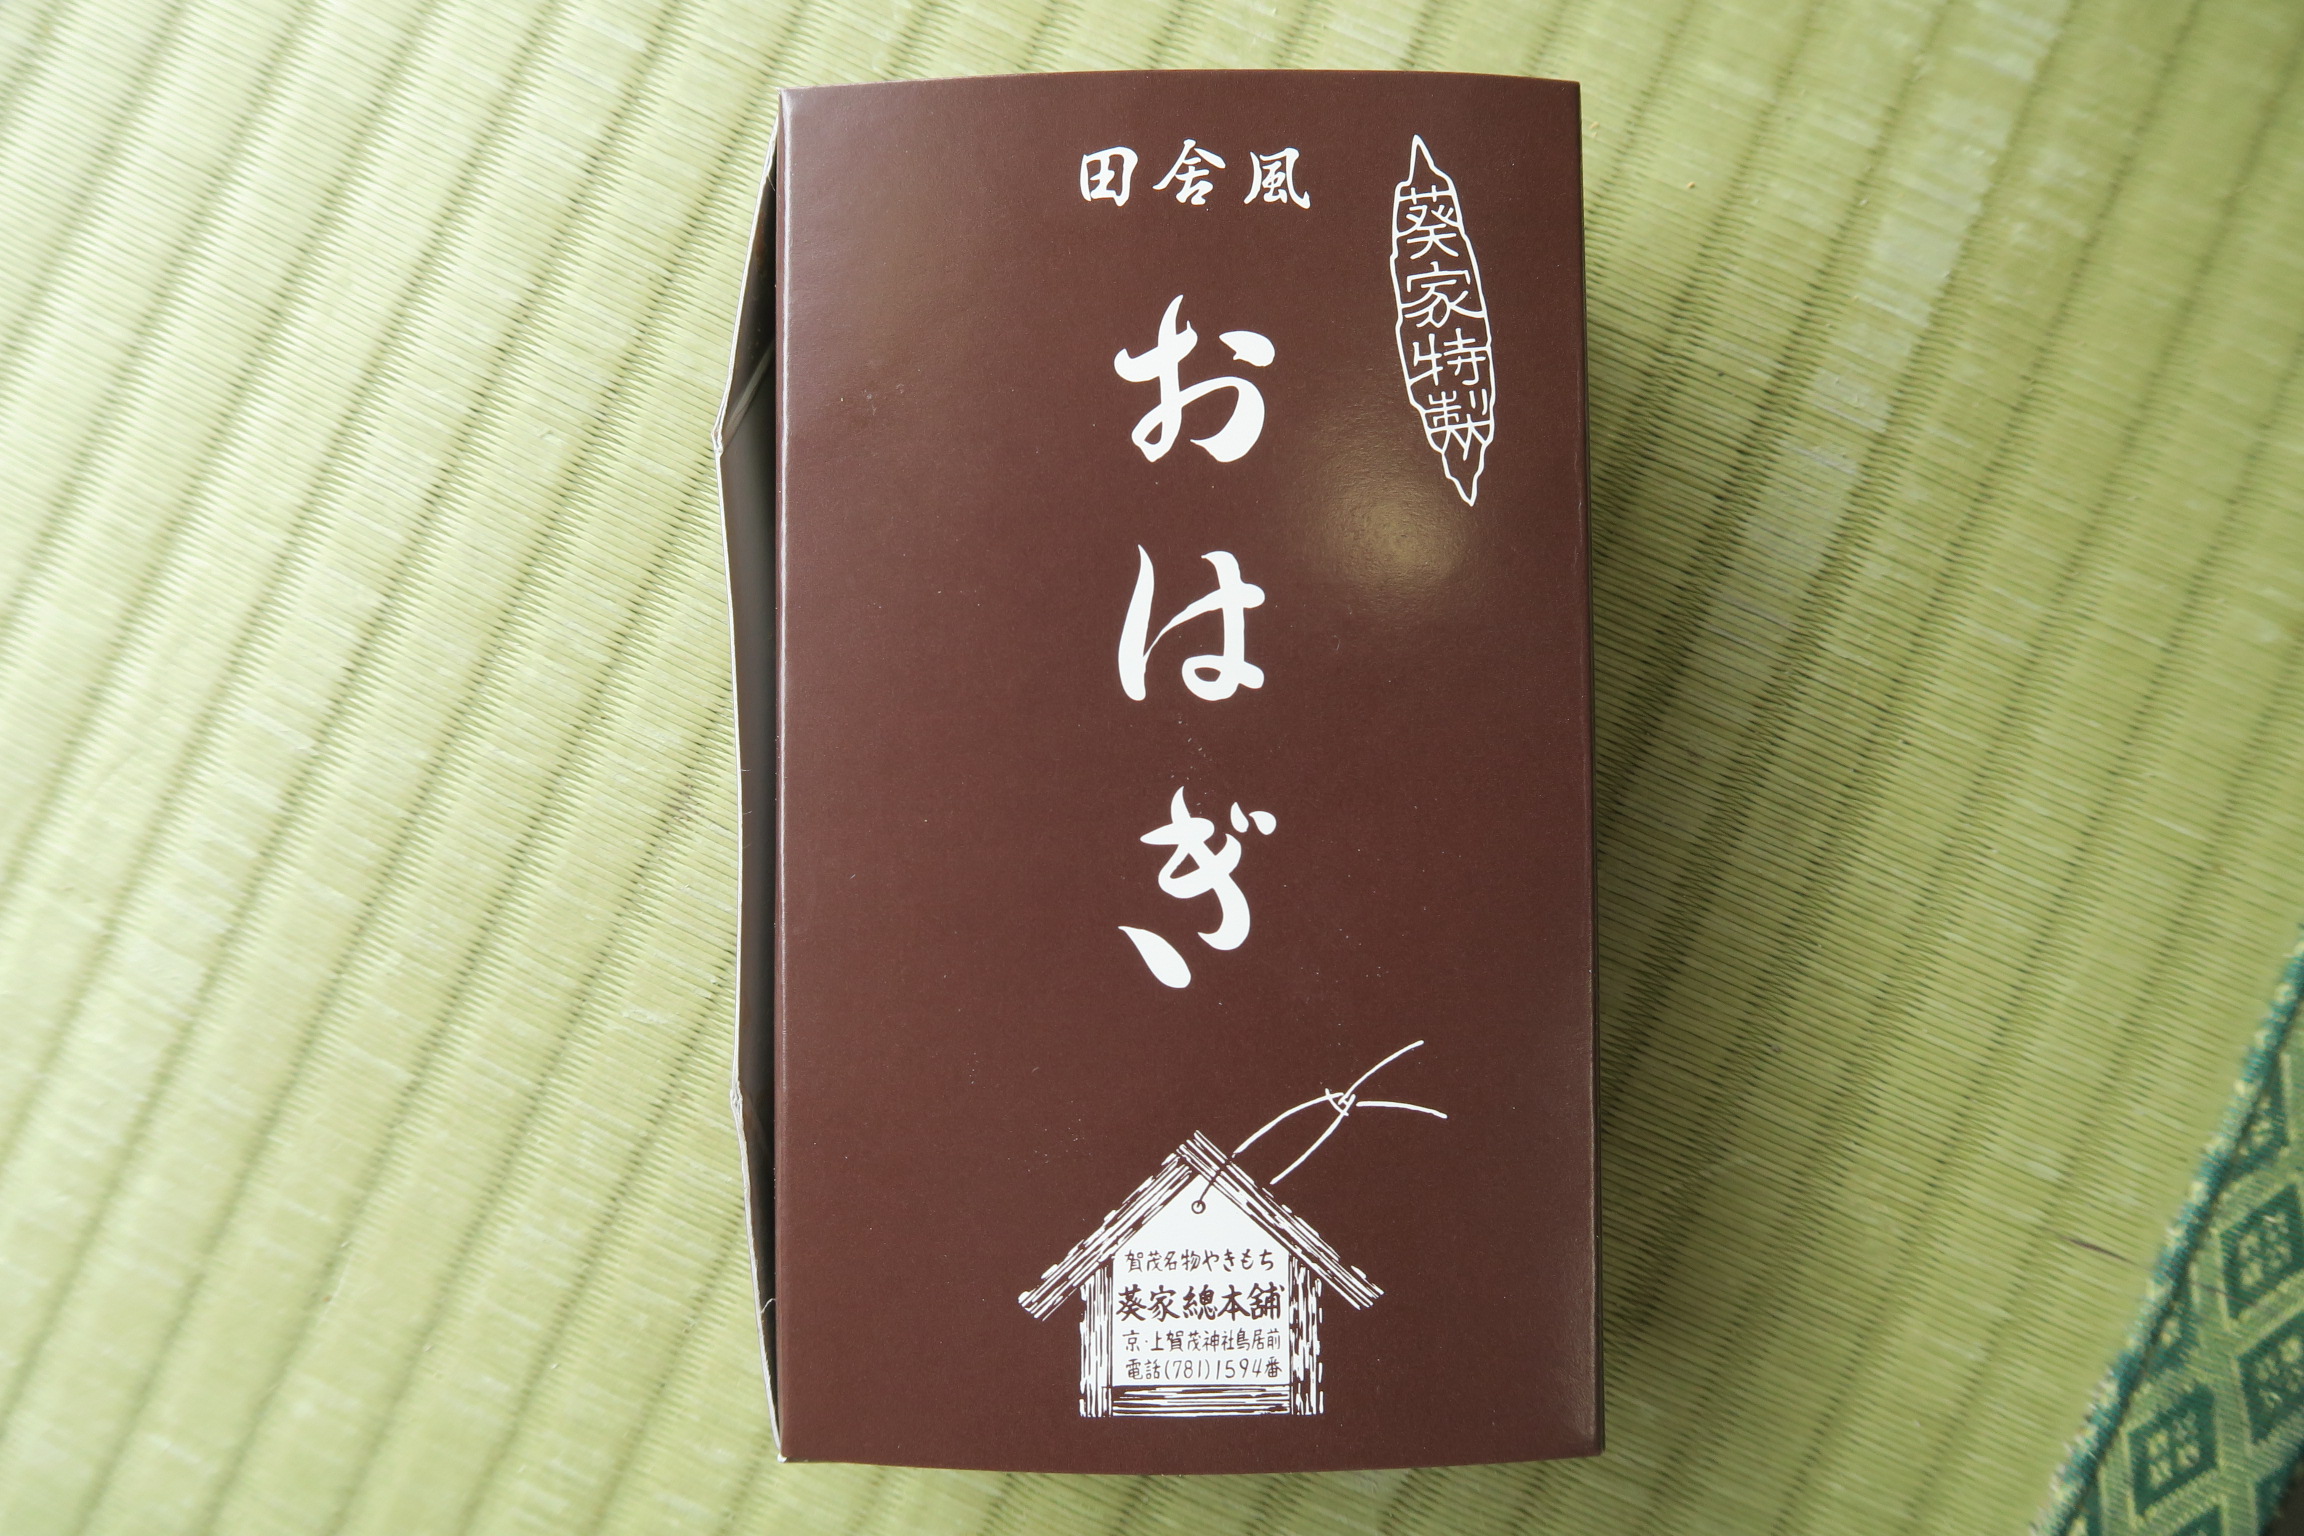 上賀茂神社を出たところにある「葵家総本舗」に売っていたおはぎを食べてみました。やきもちが有名なお店。